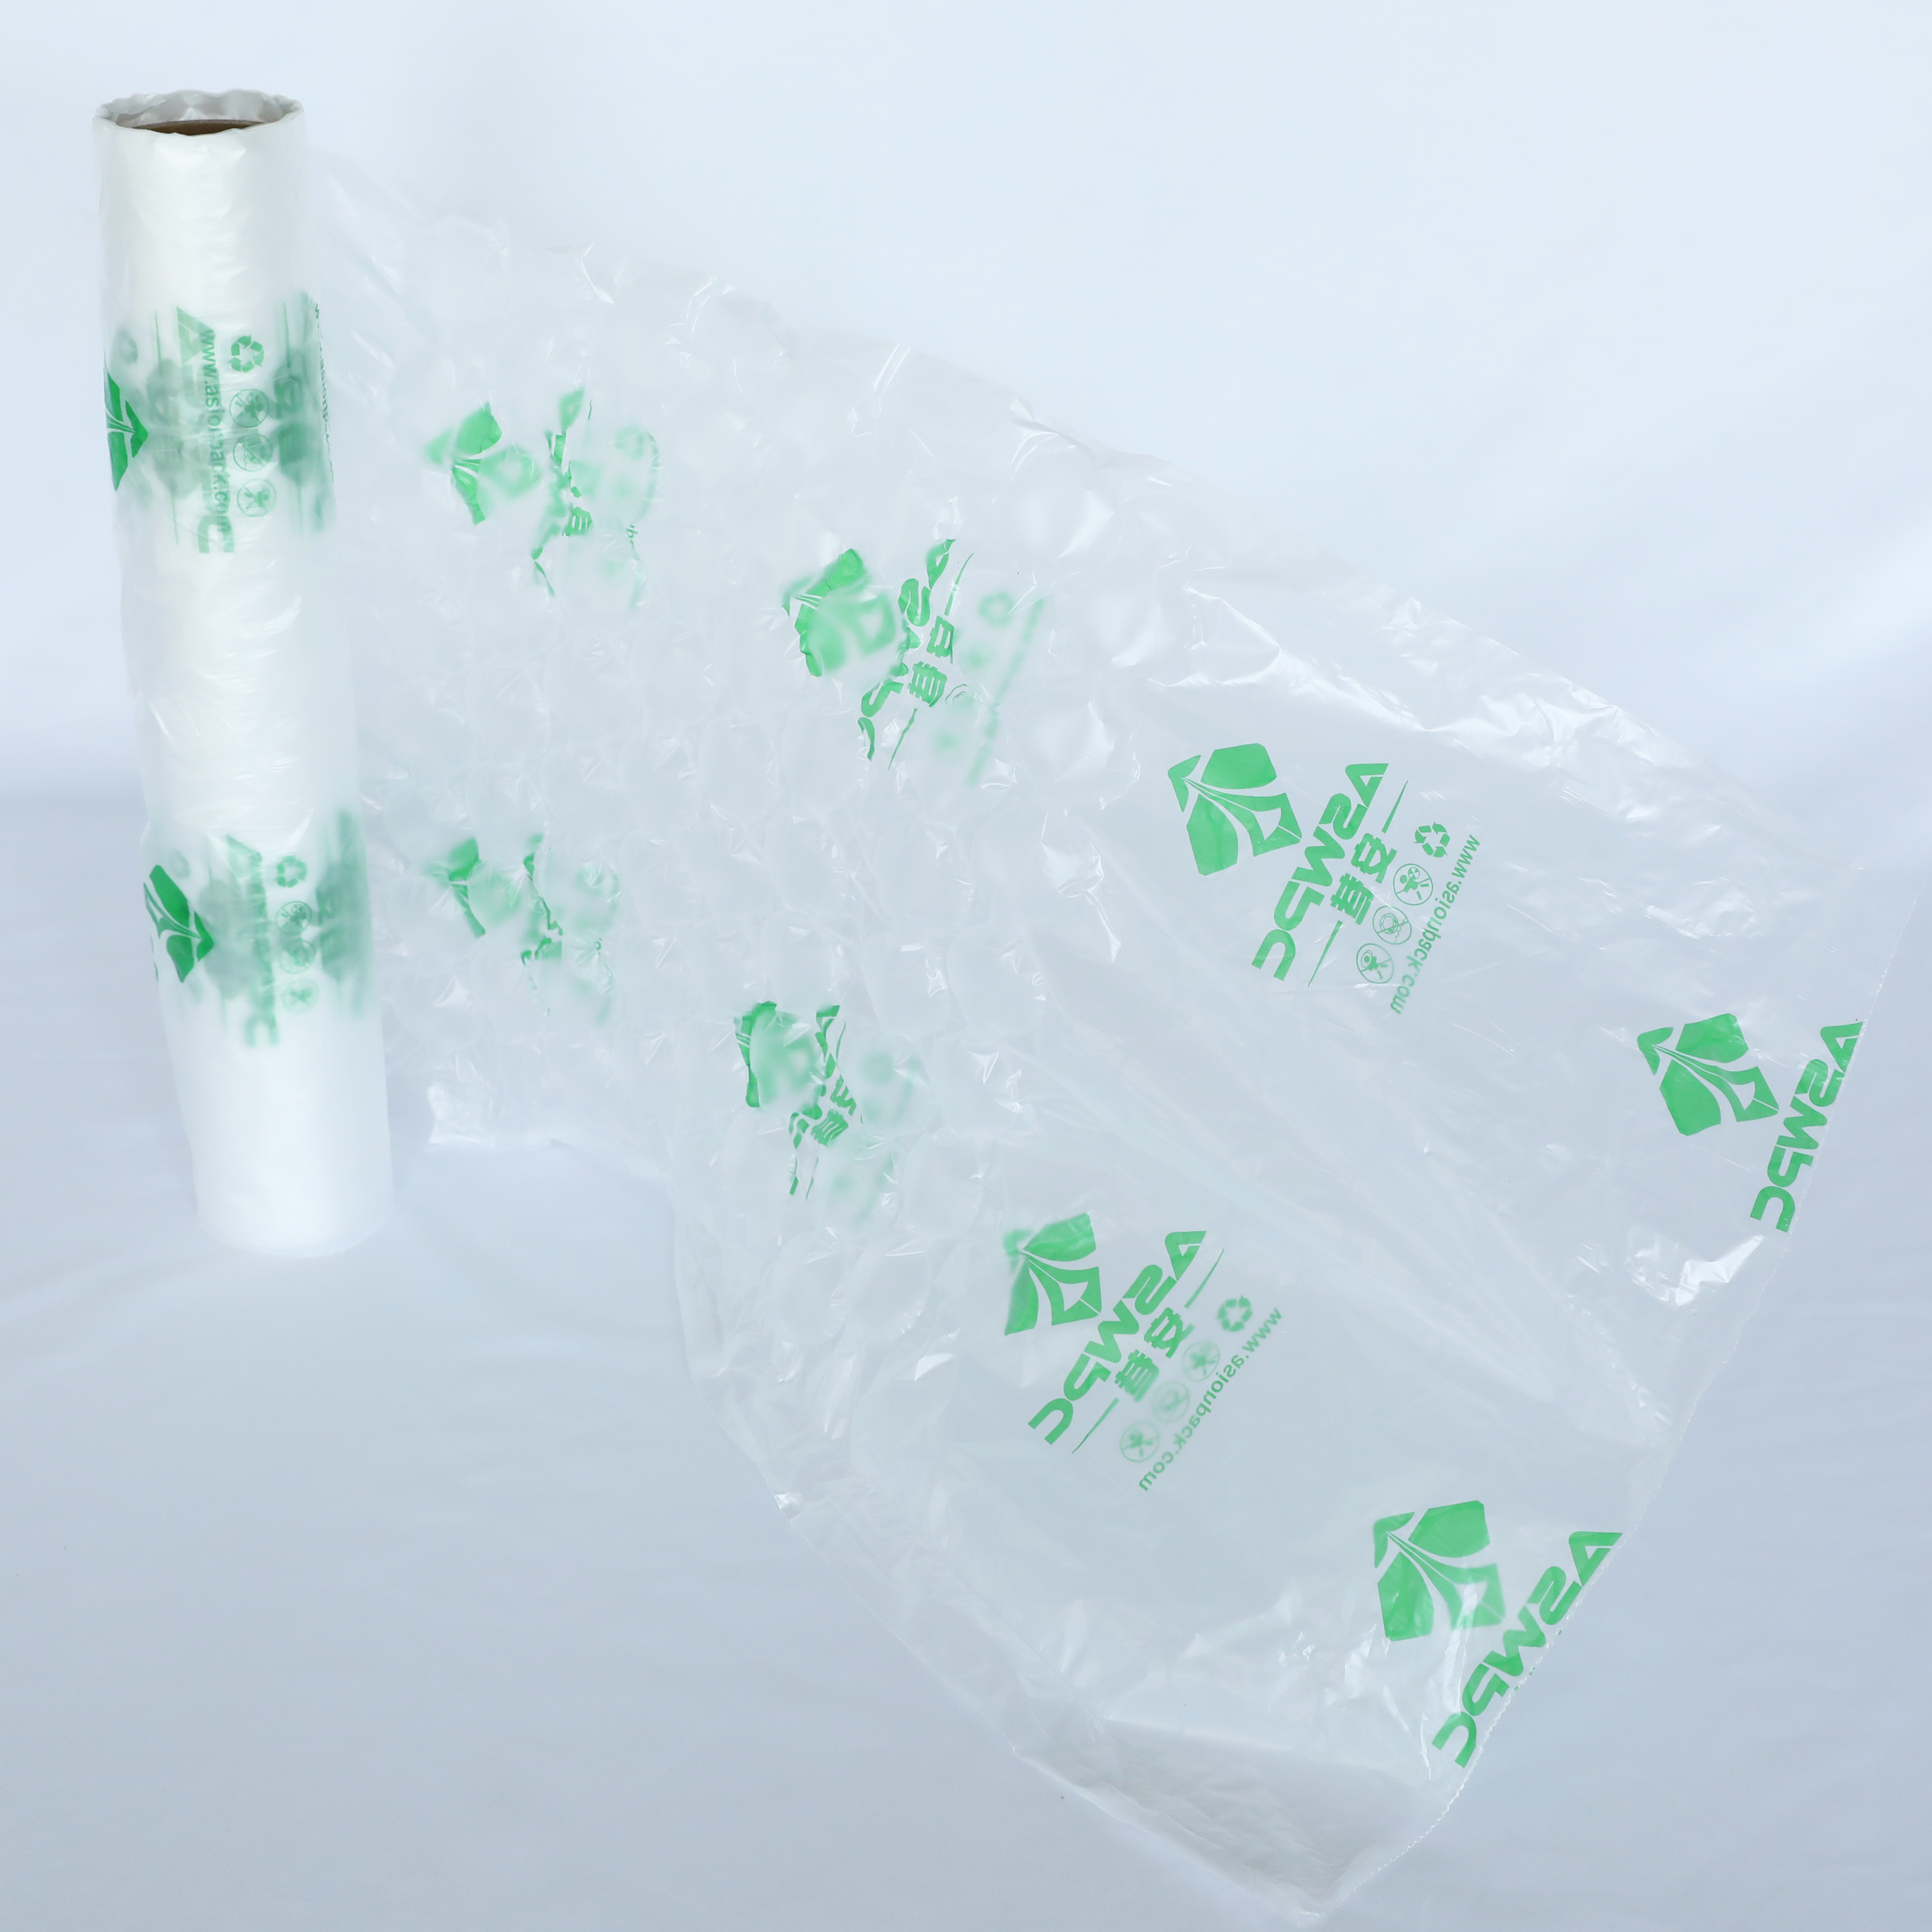 Aufblasbare Luftkissen-Verpackungsunterlage für zerbrechliche Produkte